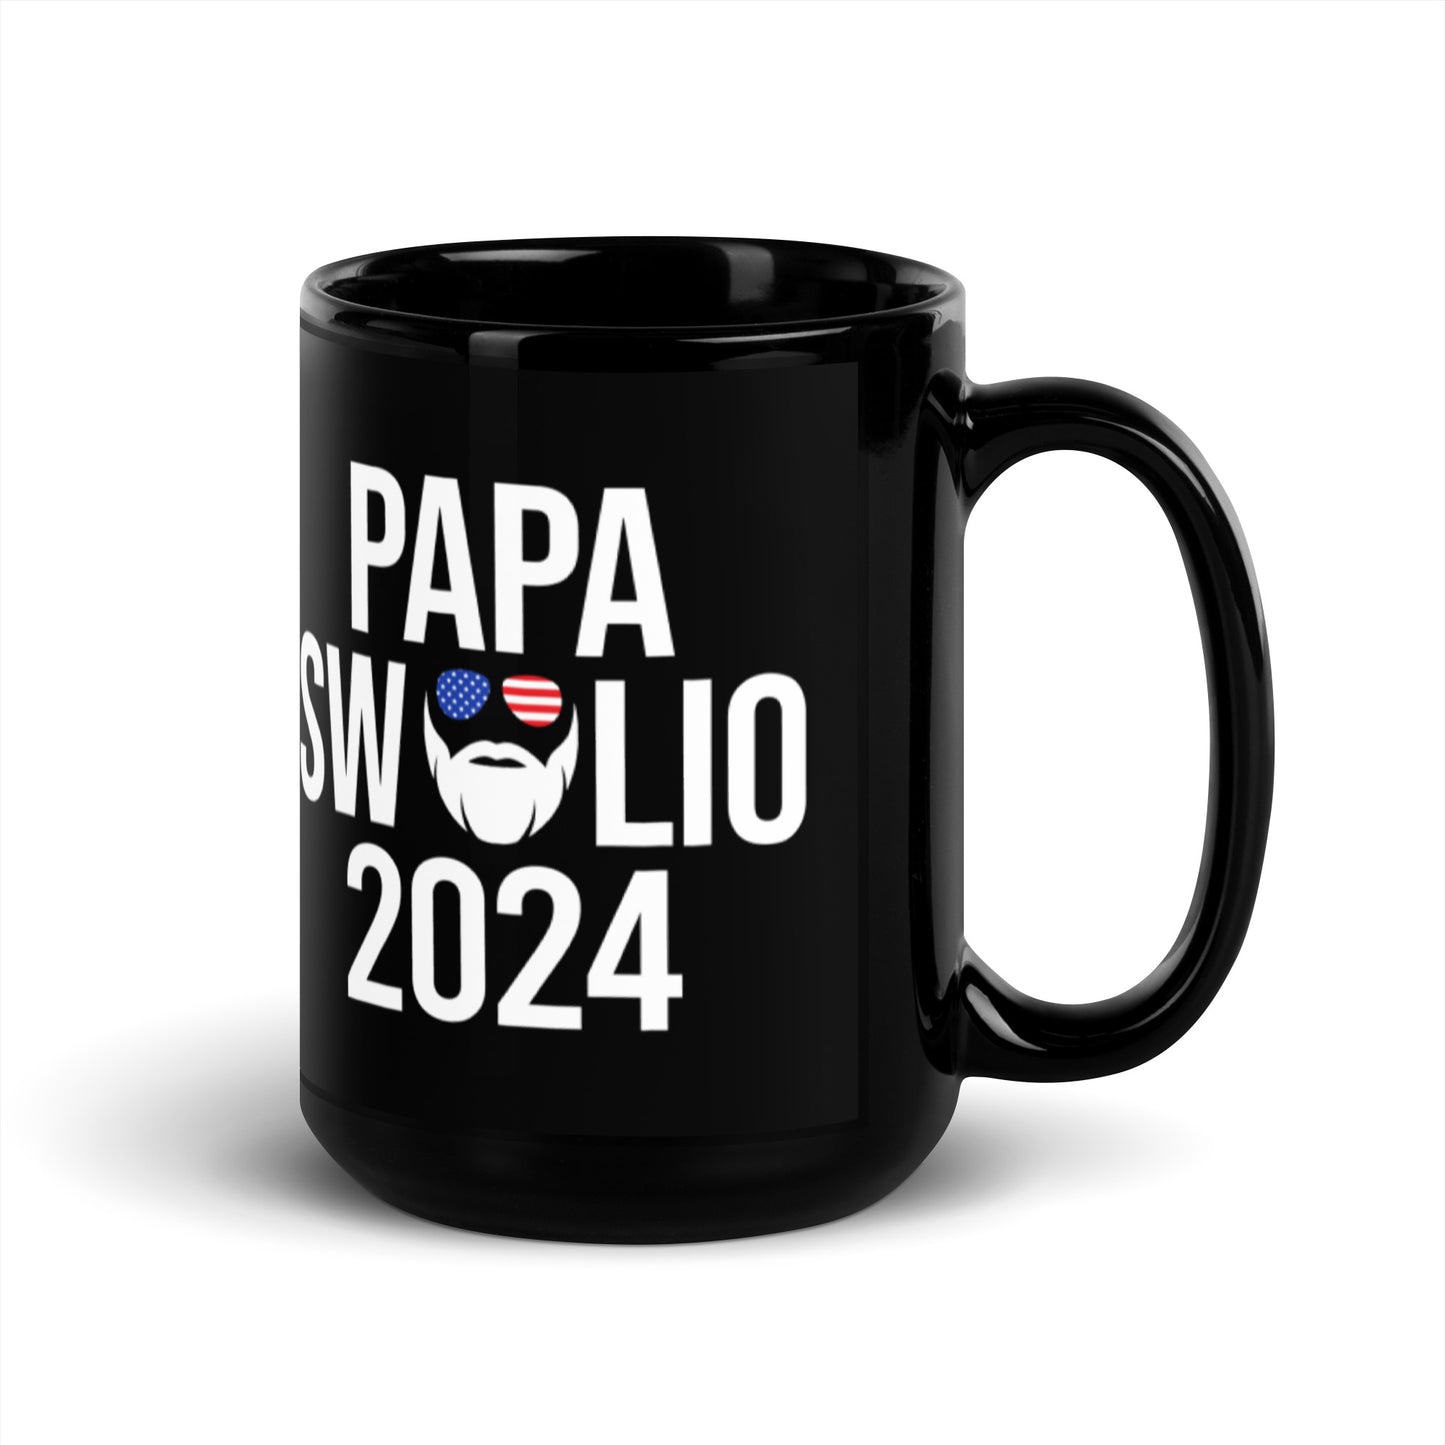 Papa Swolio 2024 Mug